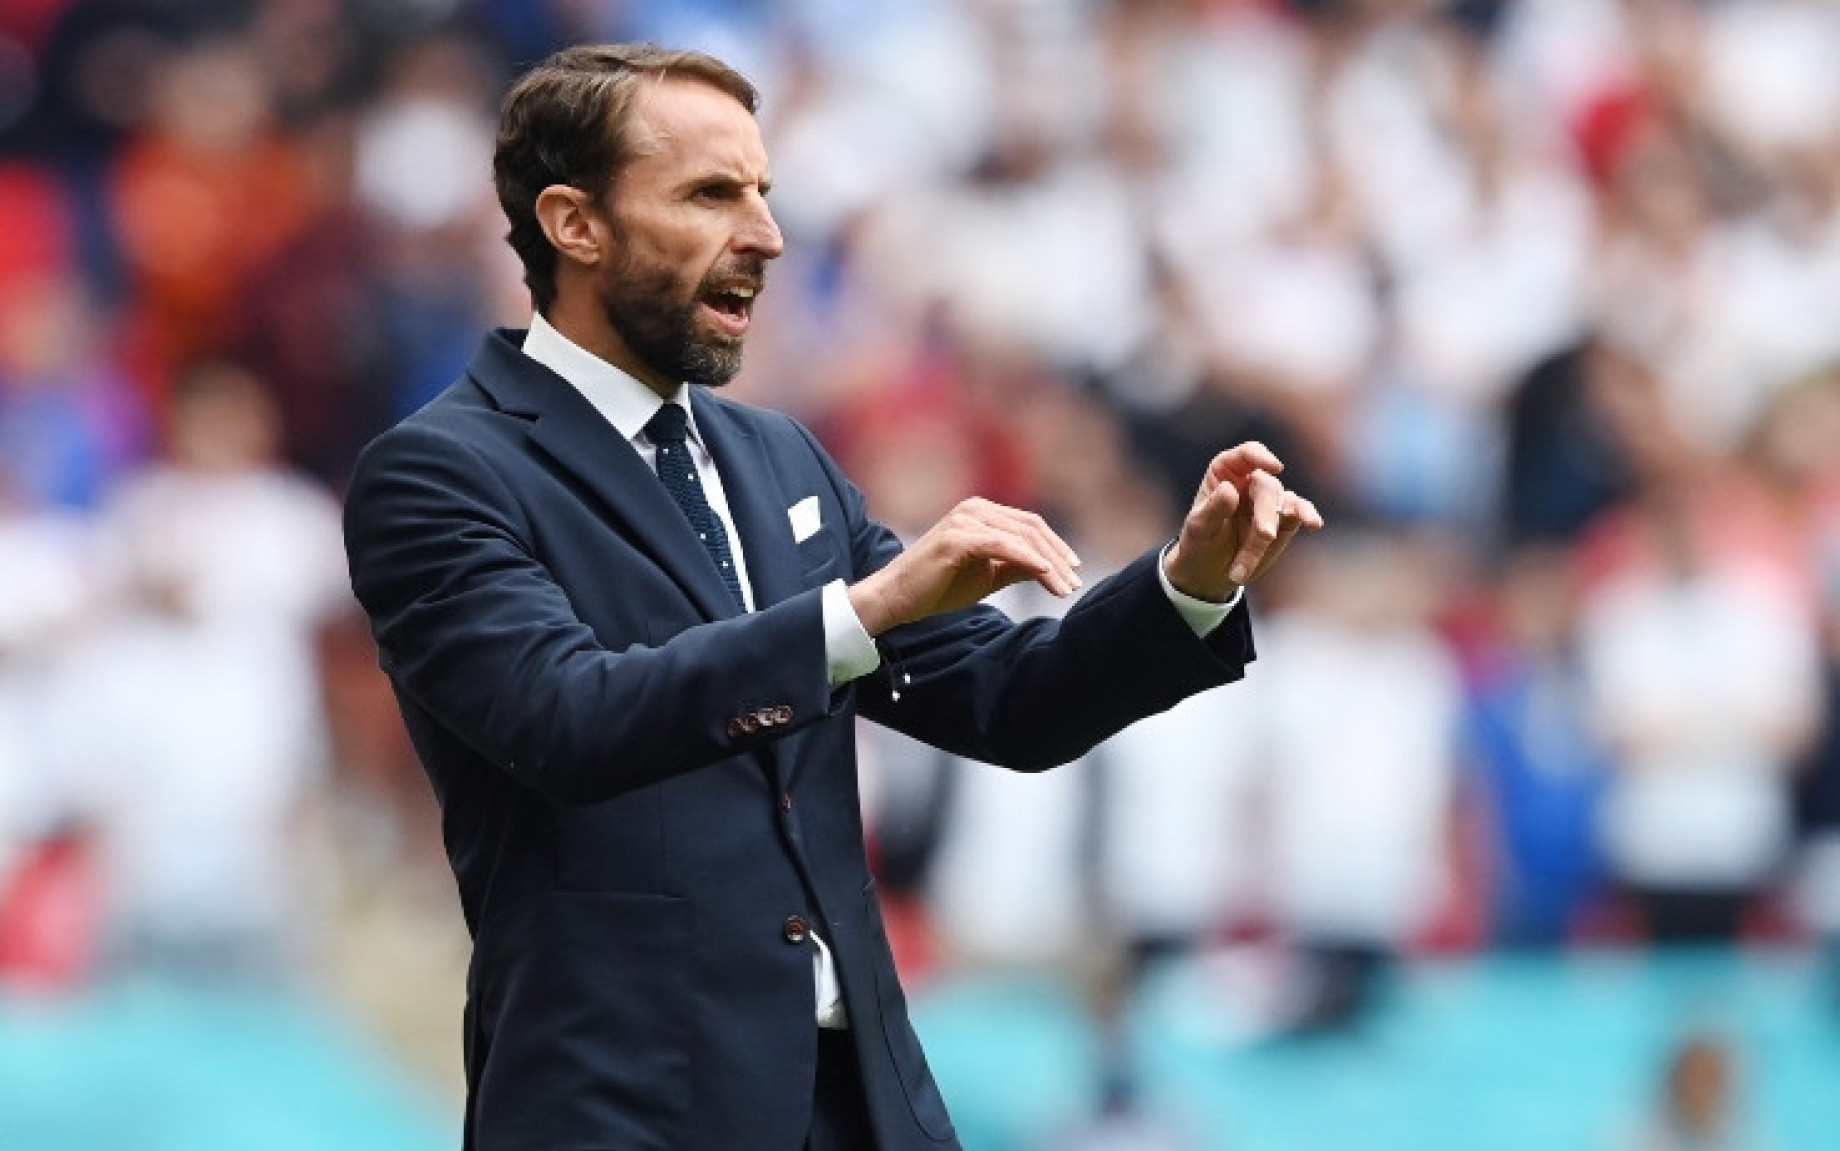 Danimarca-Inghilterra 1-1, Southgate: "Non è andata come speravamo"